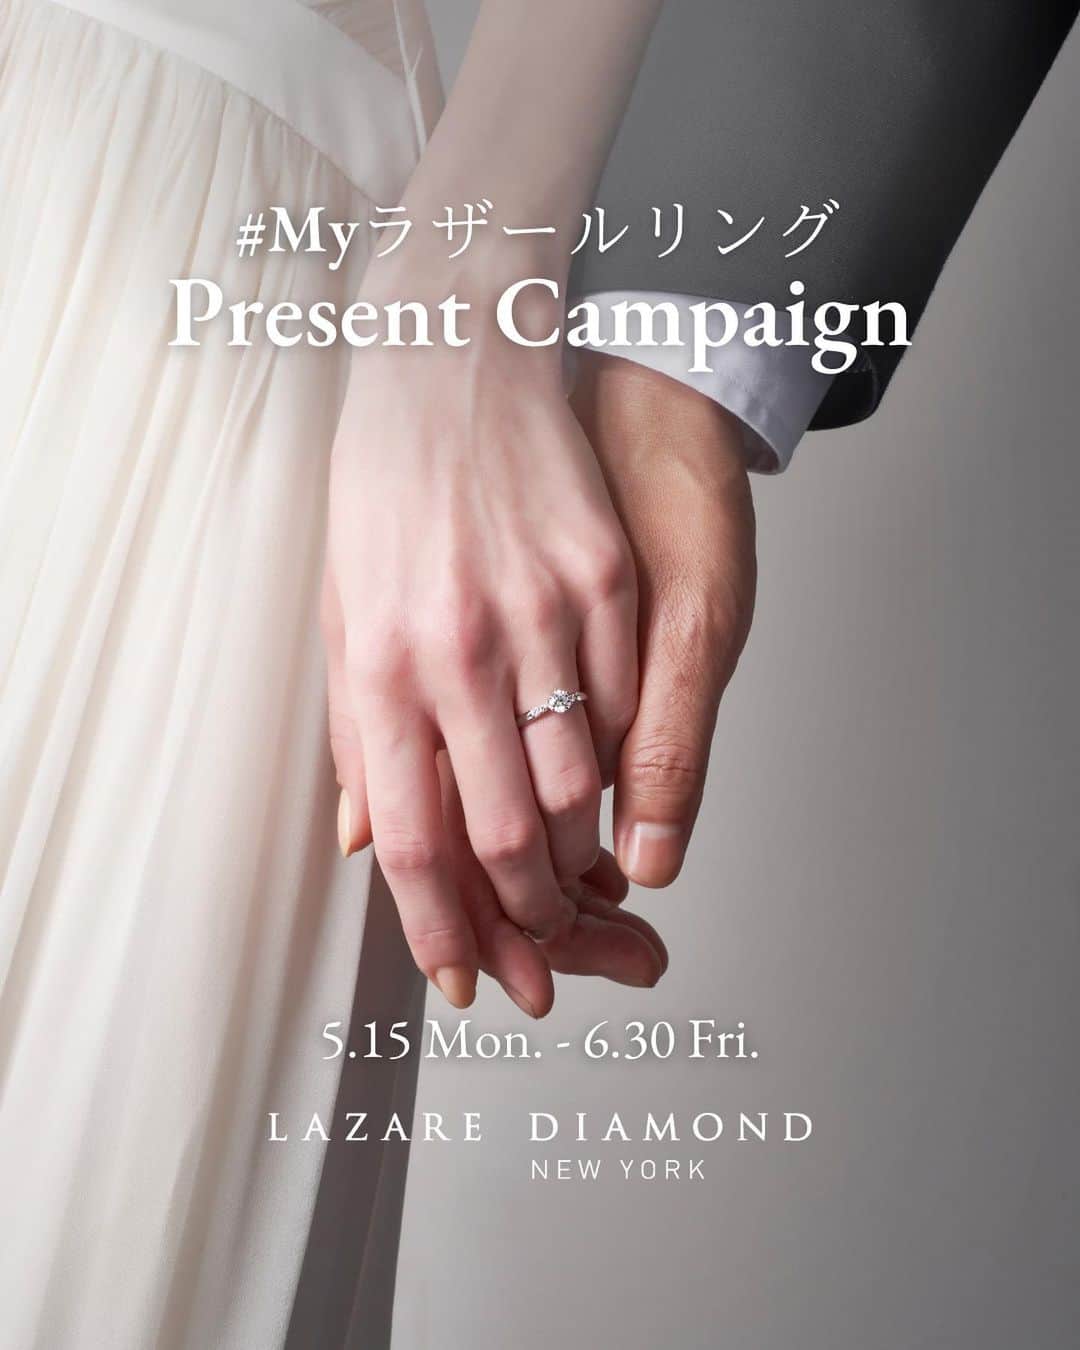 ラザール ダイヤモンド ブティック公式 | 婚約・結婚指輪さんのインスタグラム写真 - (ラザール ダイヤモンド ブティック公式 | 婚約・結婚指輪Instagram)「＃Myラザールリング Present Campaign 5/15(月)～6/30(金)  上記期間中、ラザール ダイヤモンド ブティックの婚約指輪または結婚指輪のお写真を、指定ハッシュタグをつけてご投稿いただいた方の中から合計10名様に、特別なプレゼントをご用意いたします。  👑ソウ・エクスペリエンス Relax Gift（GREEN）【5名様】 ボディケアやヘッドスパ、フラワーレッスンなど、癒される時間と体験が選べるギフト ＜収録内容＞88体験 / 1,057コースと36グッズ ＜収録エリア＞47都道府県  👑ラザール ダイヤモンド オリジナルジュエリーケース【5名様】  💎応募期間 2023年5月15日(月)～6月30日(金)23:59まで  💎応募方法 ①ラザール ダイヤモンド ブティック公式Instagram @lazarediamond_boutique をフォロー  ②ラザール ダイヤモンド ブティックでご購入いただいた「婚約指輪」または「結婚指輪」のお写真を 「#Myラザールリング 」「#ラザールダイヤモンド 」と、「#婚約指輪 」または「#結婚指輪 」をつけてInstagramフィードへ投稿。  よろしければリングの魅力やそのデザインに決めた理由などもキャプションにてお聞かせください。  💎当選発表 ・7月上旬〜中旬を予定しております。 ・当選のご連絡は当選された方にのみ、当アカウントよりDMにてお送りいたします。DMの受信設定をご確認ください。  ※プレゼントは選べません。 ※本アカウント以外の別アカウントからDMをお送りすることはございません。必ず本アカウントからの連絡であることをご確認いただき、不審な連絡があった際はお手数ですが本アカウントへお知らせいただけますと幸いです。  ※賞品発送に関わる個人情報以外に、クレジットカード情報など個人情報の入力を依頼することはございません。  皆さまのご参加をお待ちしております。  ------------------------- ＊本アカウント(@lazarediamond_boutique)がラザール ダイヤモンド ブティック公式アカウントとなります。なりすましアカウントにはご注意ください。 ＊既にフォローいただいている方もキャンペーンの当選対象となります。 ＊アカウント非公開設定の方は対象外です。 ＊お届け先は日本国内のみとさせていただきます。 -------------------------  ■注意事項 ＜体験ギフトについて＞ ・チケットの有効期間は6カ月間です。 ・体験予約、申込方法は、WEBとなり、通信にかかる費用はお客さまのご負担となります。 ・予約期限があります。チケットの有効期限の2週間前までにご予約を行なってください。なお、期限の延長はできませんのでご注意ください。 ・ご利用できる体験の種類や施設、コース内容、エリア等は、予告なく変更になる可能性があります。最新情報は、予約サイトでご確認ください。 ・体験場所までの往復交通費など諸経費はお客さまのご負担となります。  ＜キャンペーン参加について＞ ・本キャンペーンにご参加いただくことにより、キャンペーン要項に同意いただいたものとみなします。（未成年の方については、親権者に同意いただいたものとみなします） ・当選された方の住所が不明で賞品をお届けできない場合は、当選を無効とさせていただく場合がございます。 ・応募内容に不備・虚偽等がある場合は、当選を無効とさせていただきます。 ・当選時、応募者のアカウントフォロー及び投稿の状態が継続されていることが確認できない場合、抽選の対象から外れる場合がございます。 ・DM受信のブロックやネット環境が原因での不着、または当選通知のDMに記載の手続きを履行いただけない場合は、当選を無効とさせていただきます。 ・本キャンペーン参加にあたって生じる通信料は、ご本人様負担となります。 ・当選DMを送信後、期限内に返信を確認できない場合は、当選を無効とさせていただきます。 ・本キャンペーンはInstagramが支援、承認、運営、関与するものではございません。 ・本キャンペーンは、主催側が継続不可能と判断した場合、中止する場合がございます。また、主催側は何人に対しても責任を負うものではありません。 ・当選に関わるお問い合わせは一切お受けいたしかねます。予めご了承ください。 ・応募いただいたお写真やコメントは公式サイトやSNSでご紹介させていただく場合がございます。  ■キャンペーンお問合せ先 当アカウントのDMにご連絡をお願いいたします。 受付時間：平日11時-17時 ※受付時間外のお問い合わせにつきましては、平日3営業日以内に回答いたします。  来店予約はプロフィールのリンクから。 @lazarediamond_boutique」5月15日 11時24分 - lazarediamond_boutique